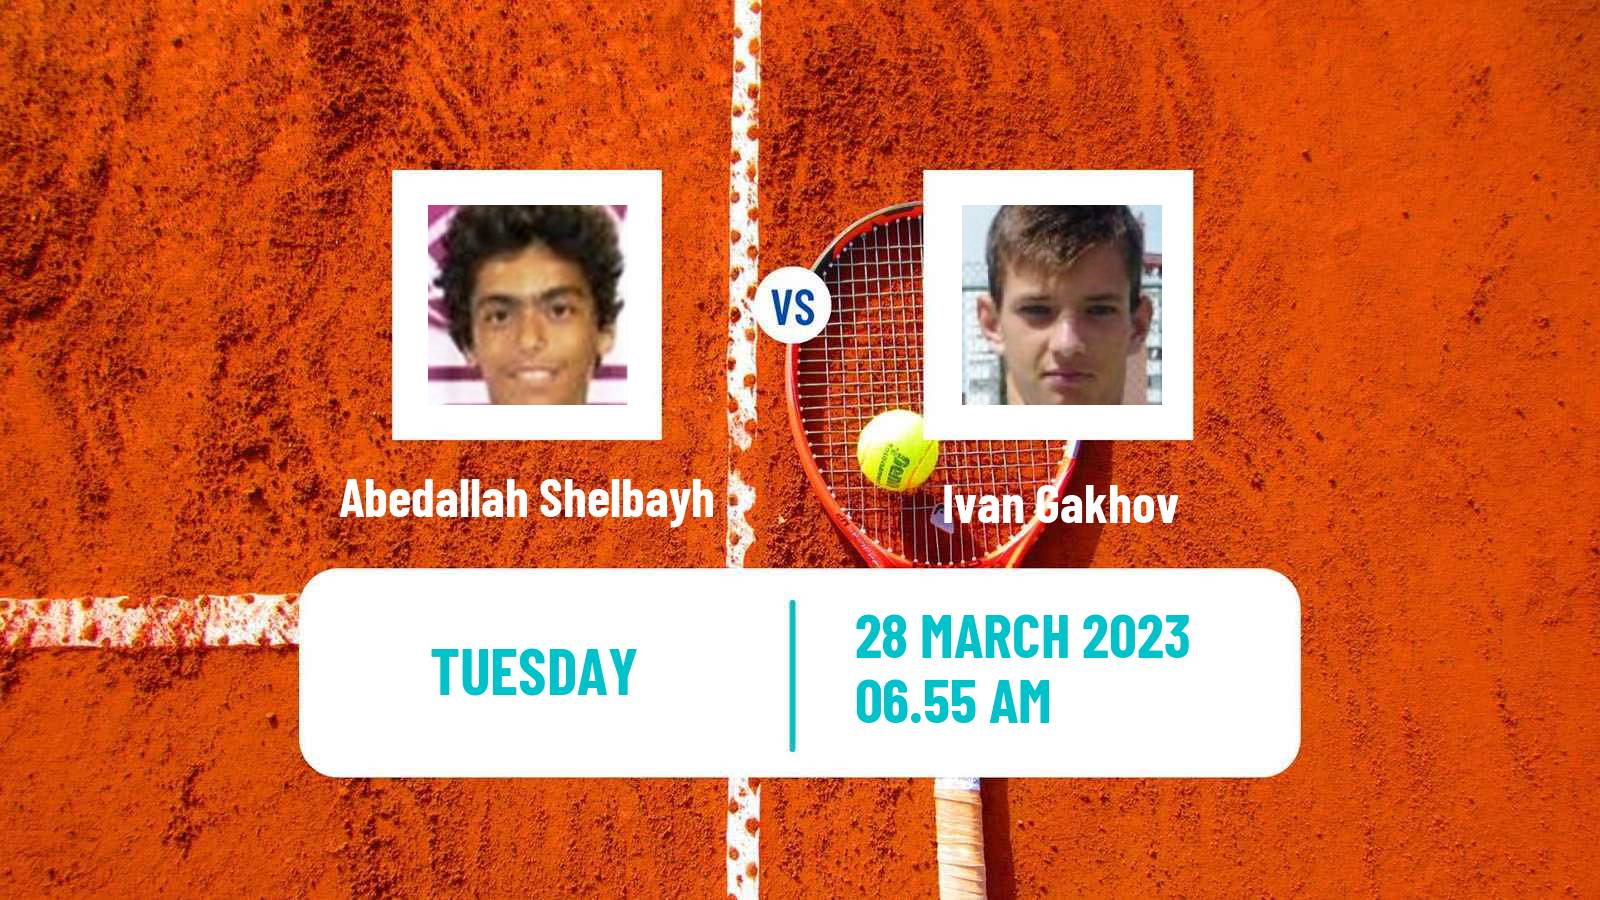 Tennis ATP Challenger Abedallah Shelbayh - Ivan Gakhov